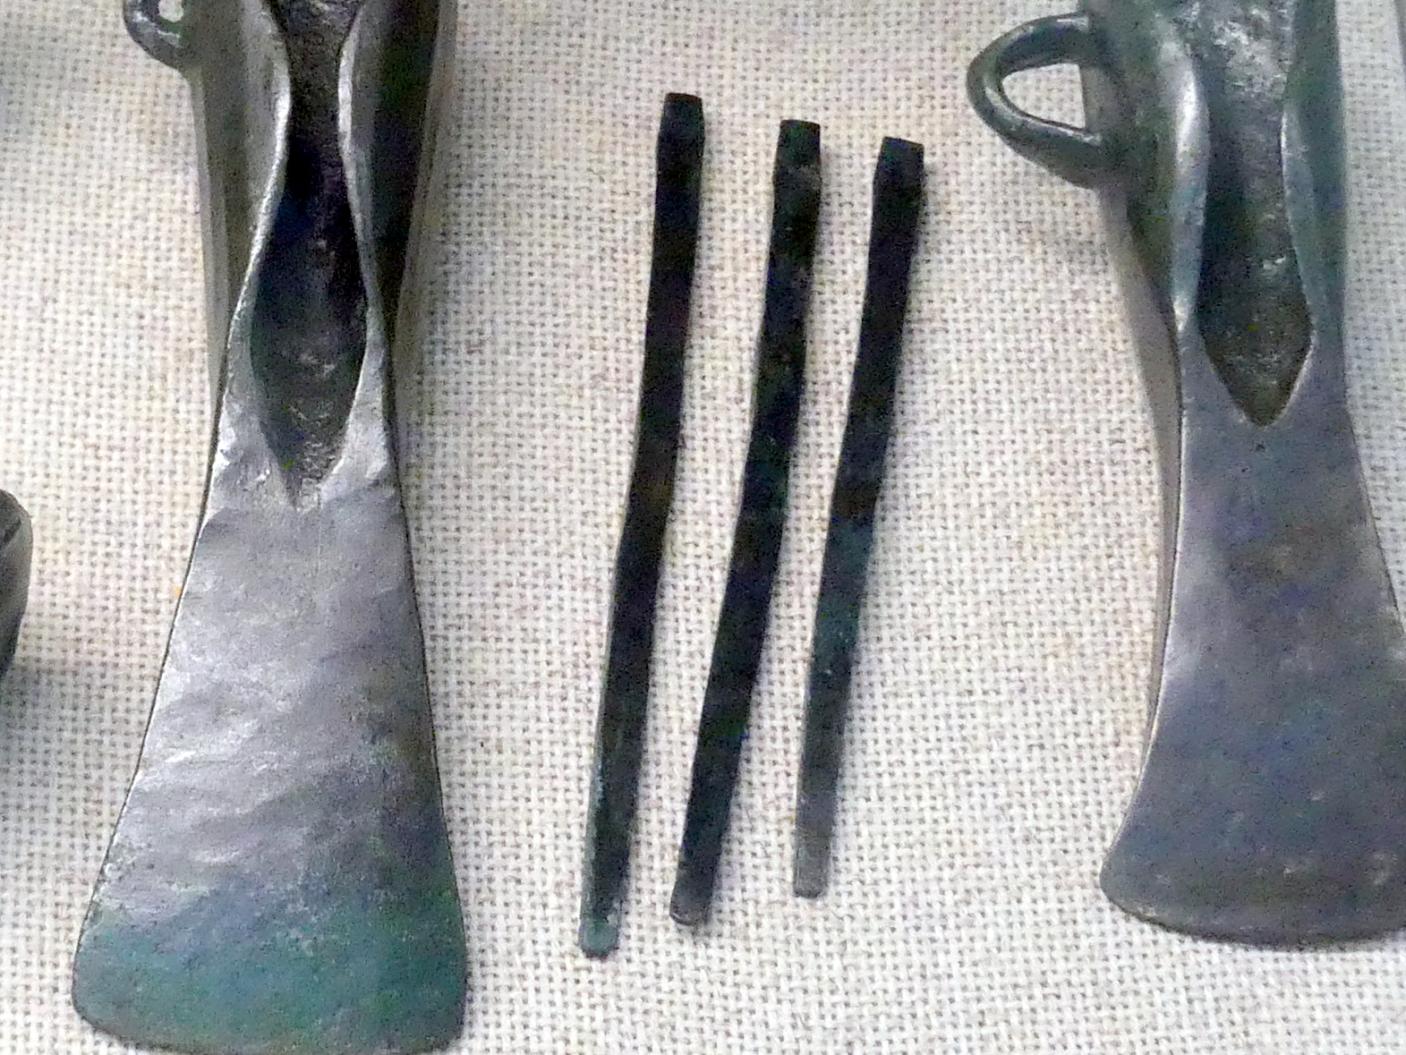 3 Pfrieme, Urnenfelderzeit, 1400 - 700 v. Chr., 800 - 700 v. Chr.